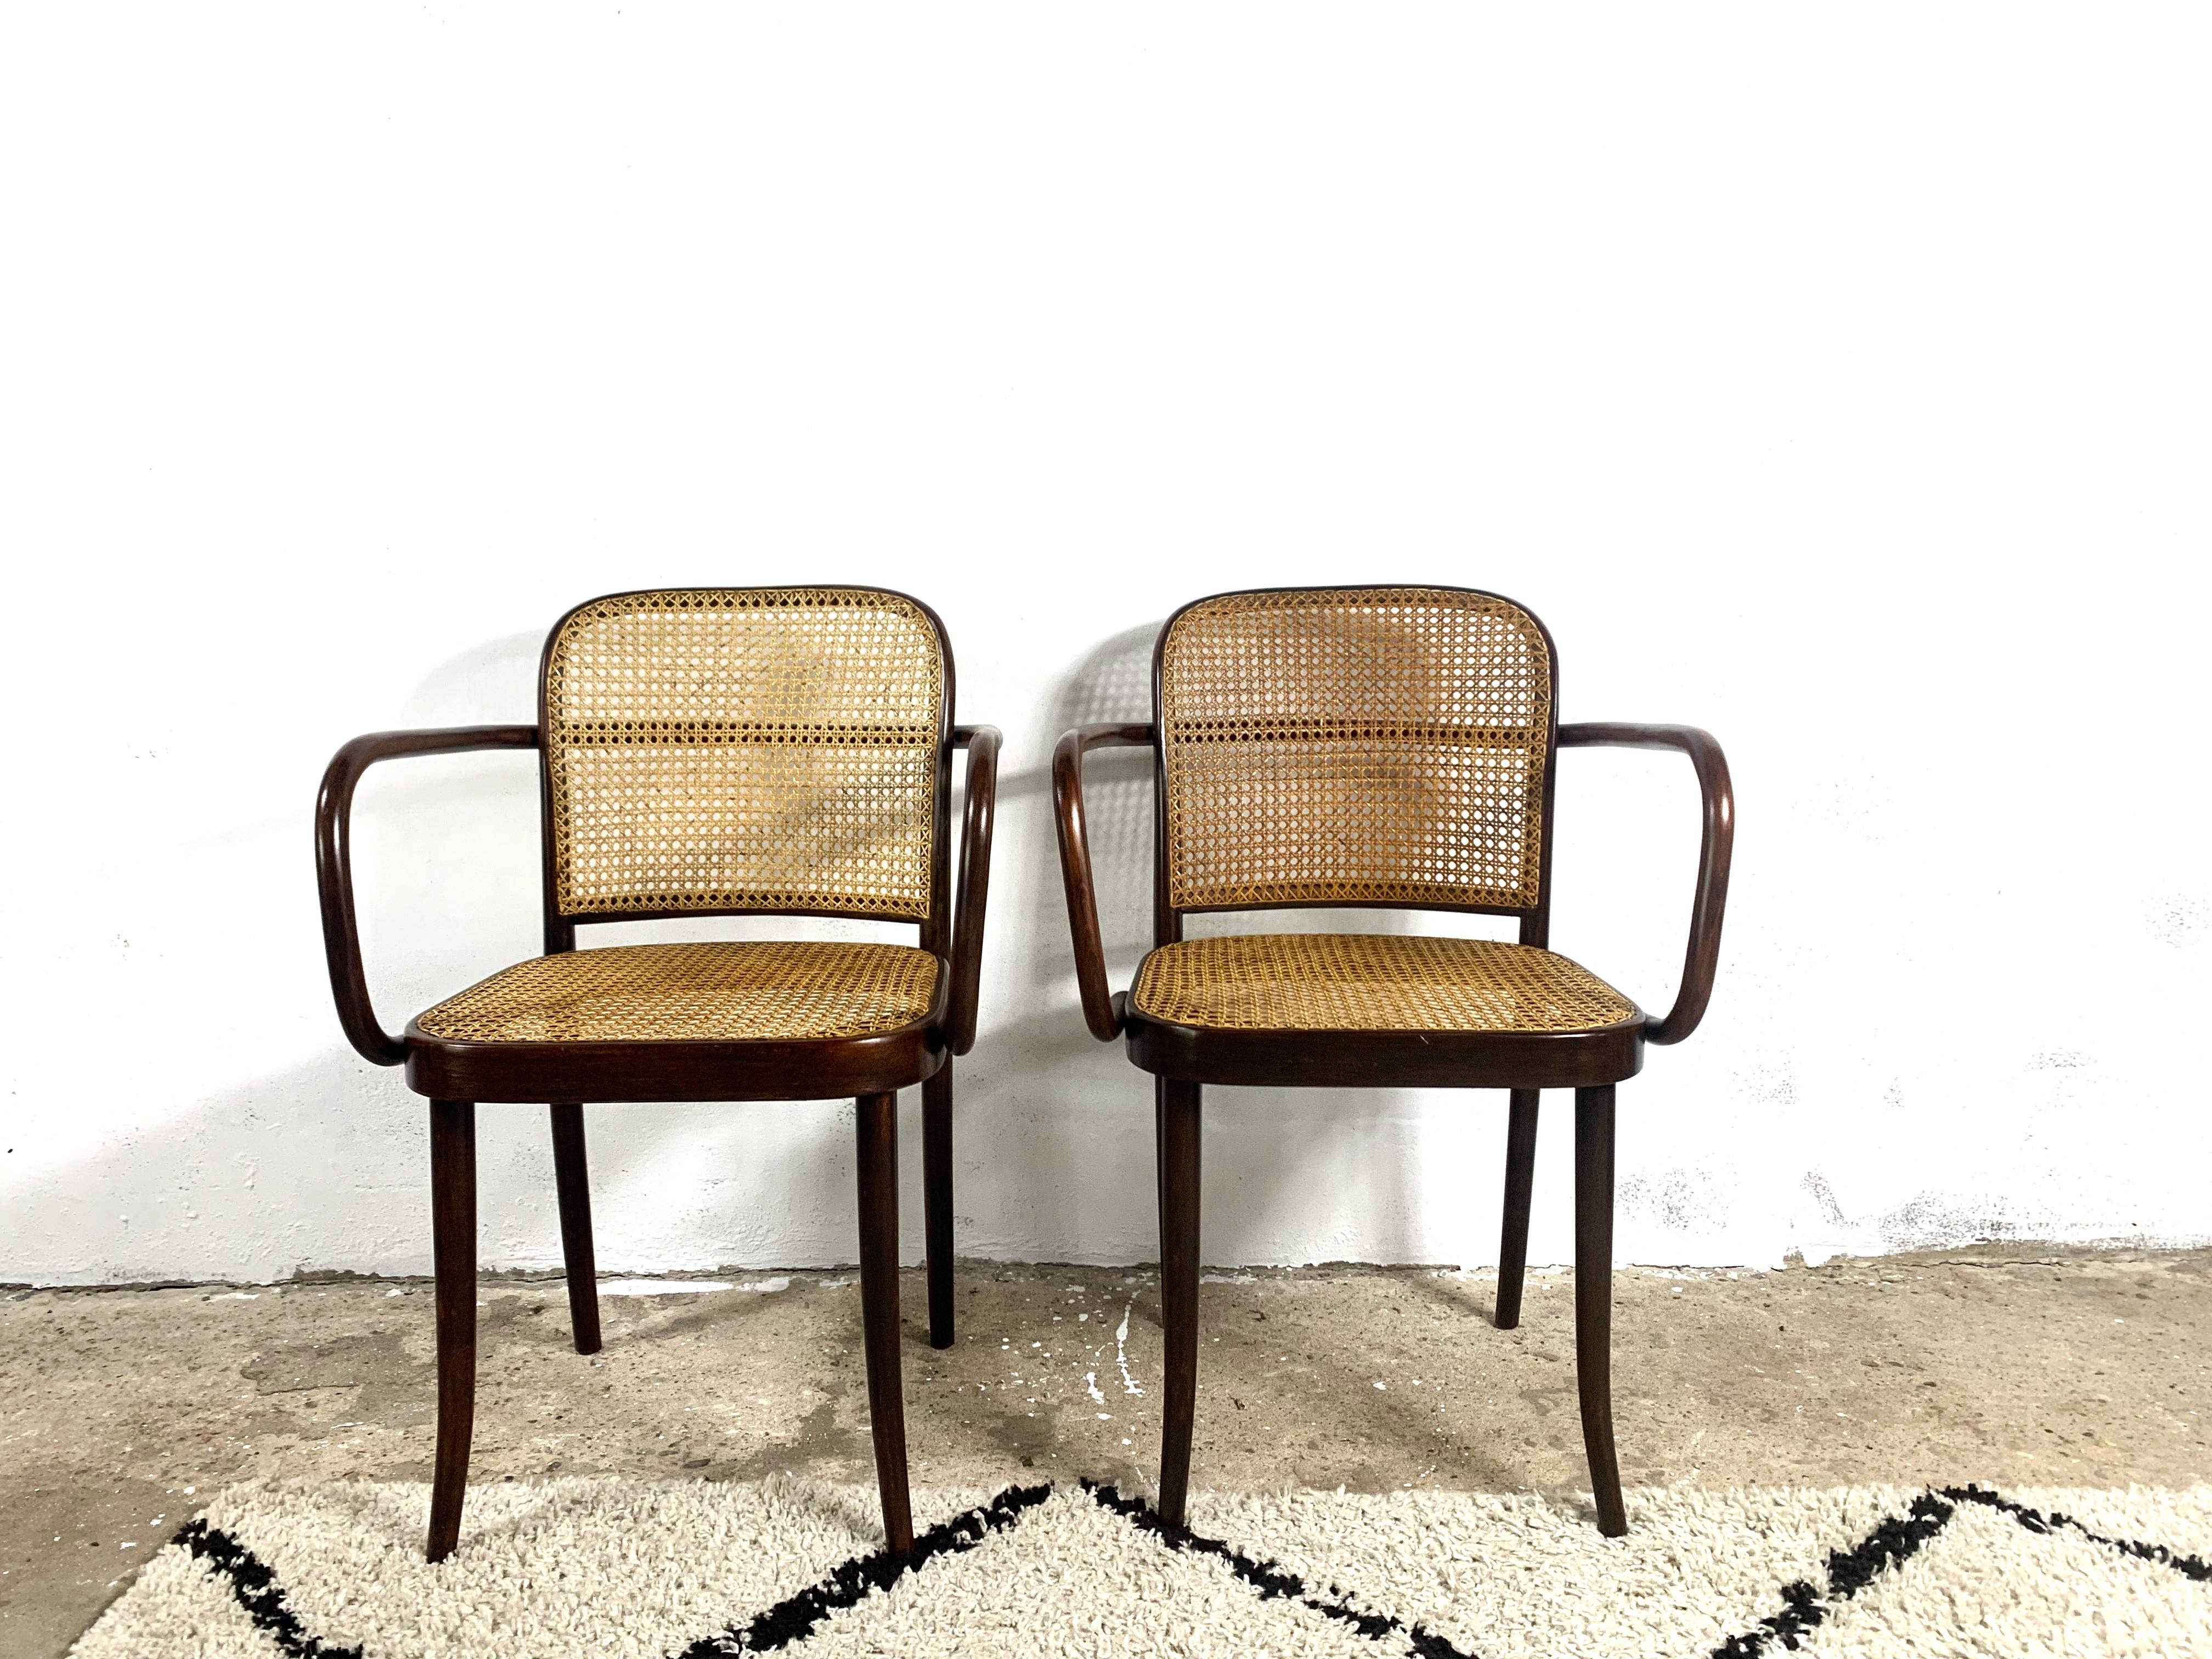 Der Thonet A811 Stuhl ist eine Variante des 811 Stuhls mit Armlehnen. Der Entwurf der Wiener Architekten Jozef Hoffman und Jozef Frank stammt aus den 1920er Jahren und wird noch heute produziert. Die vorgestellten Stücke stammen aus den 1930er